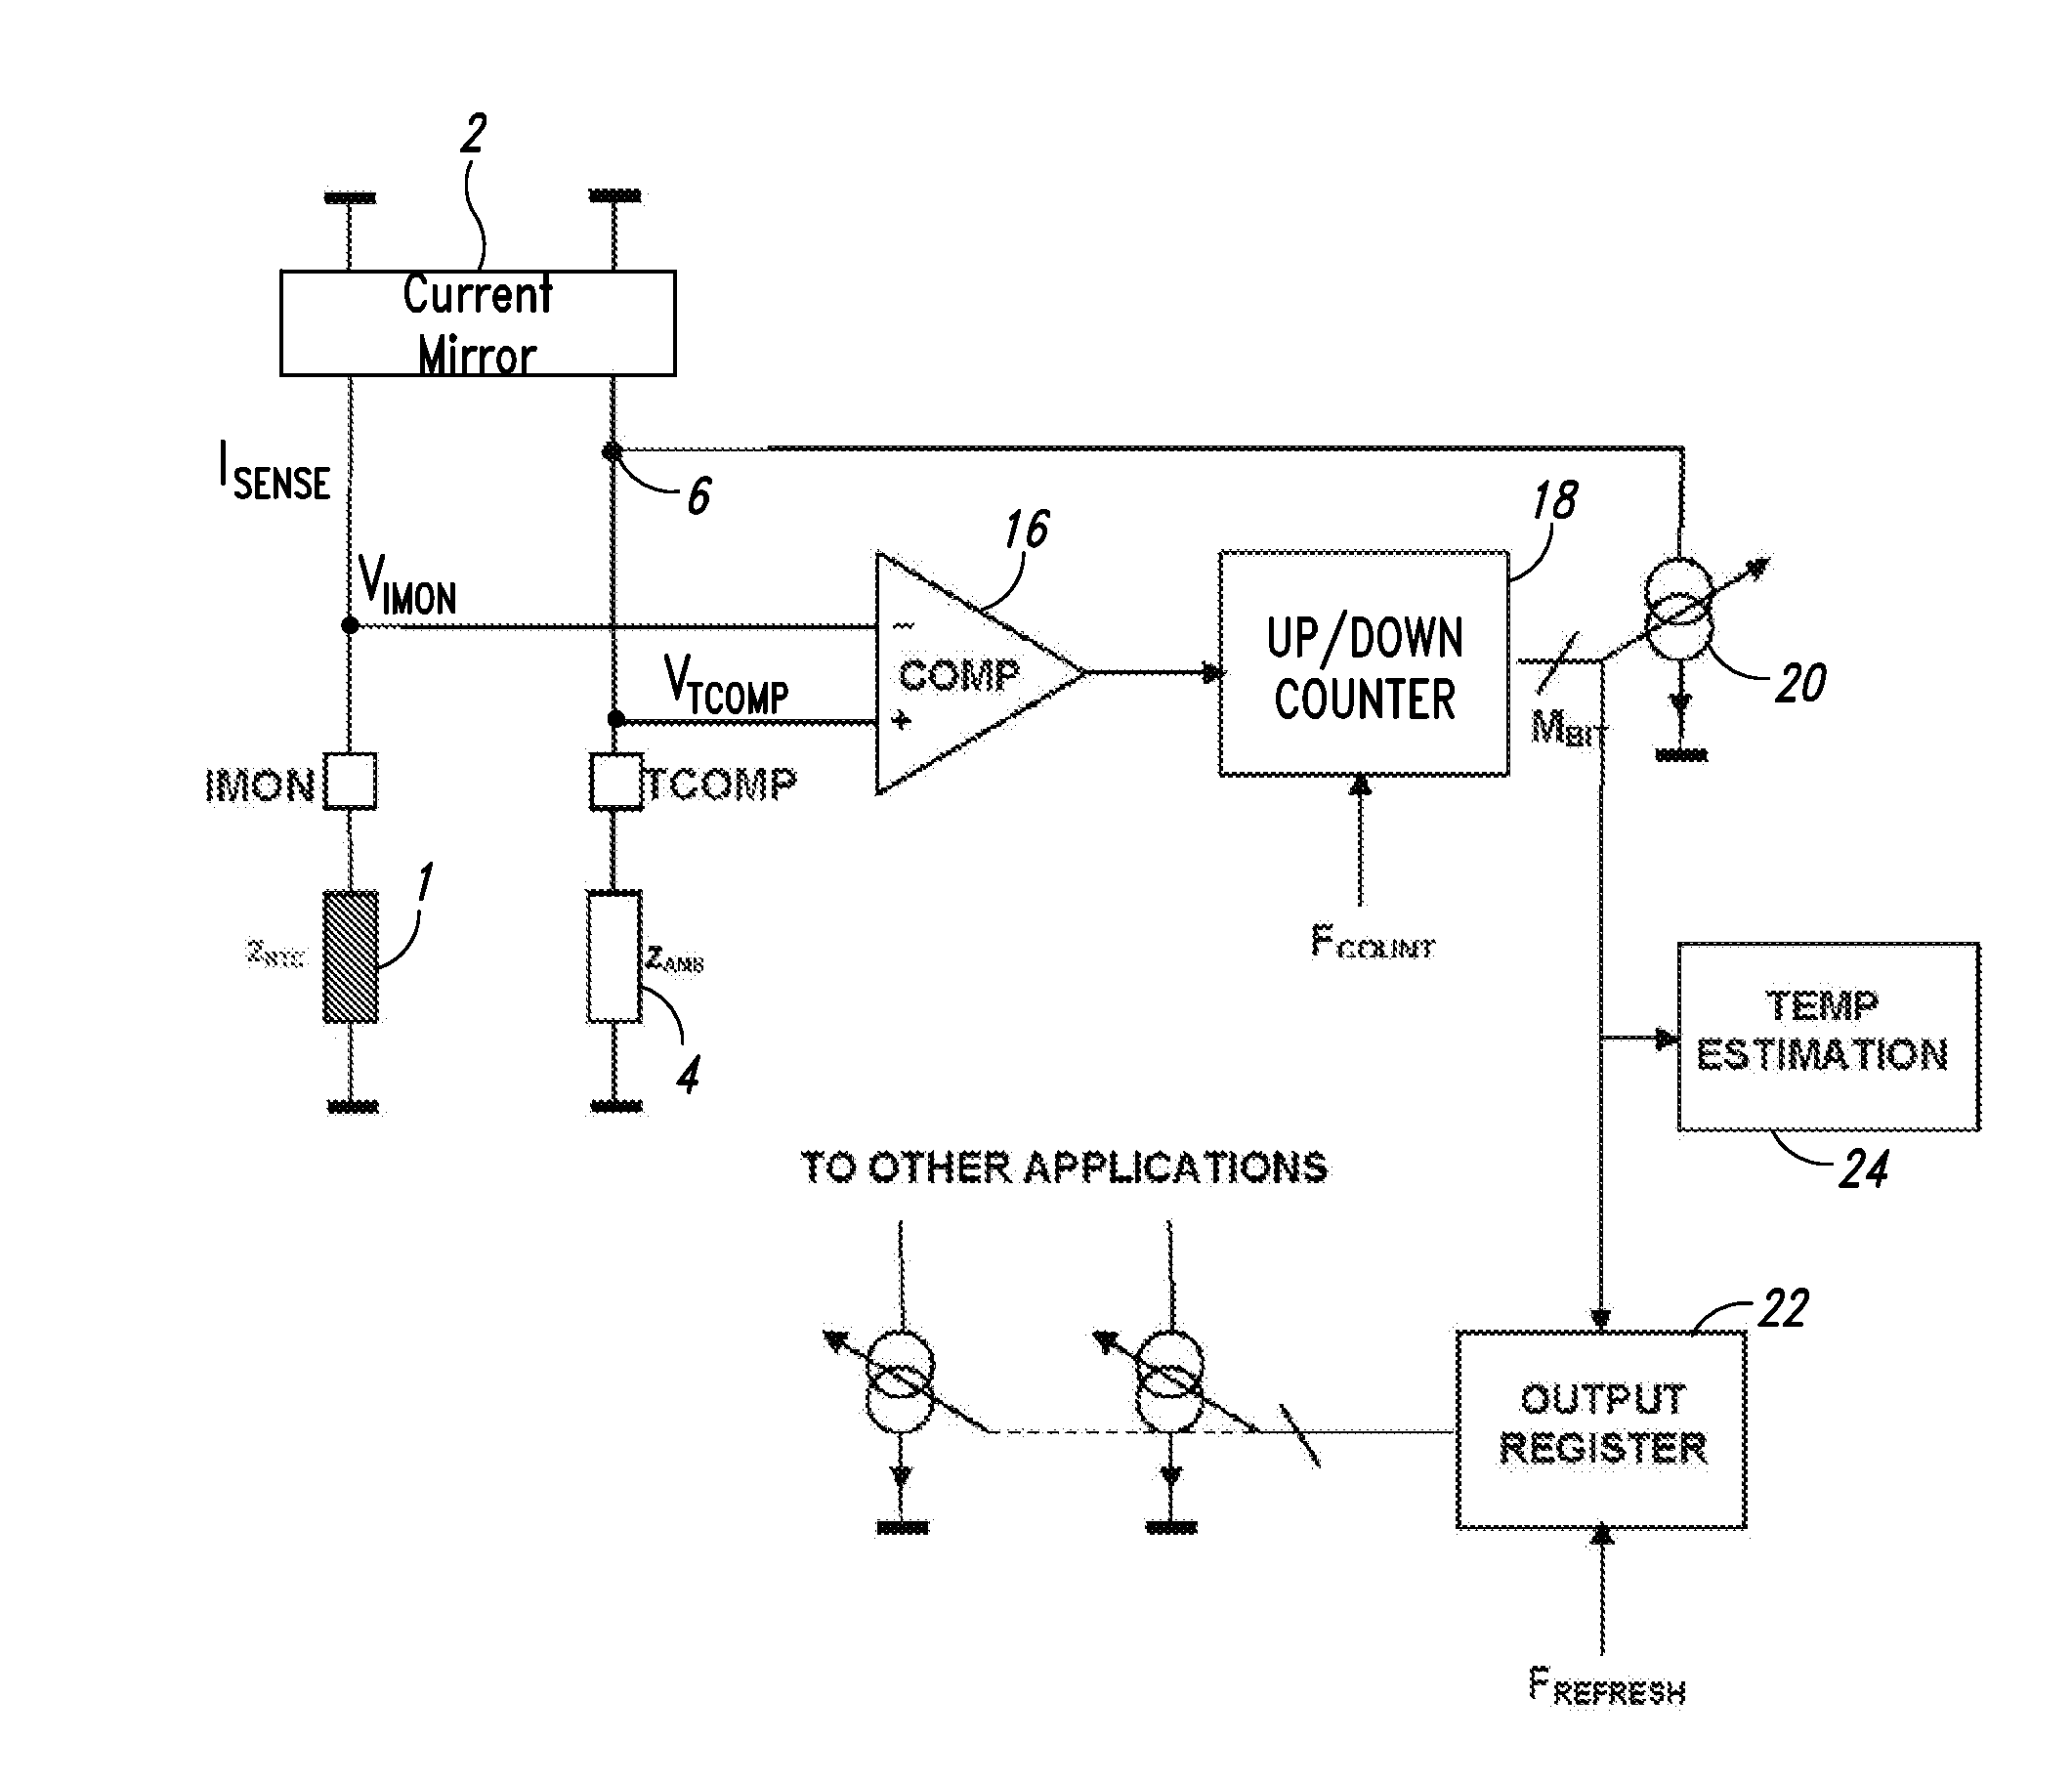 Current generator for temperature compensation